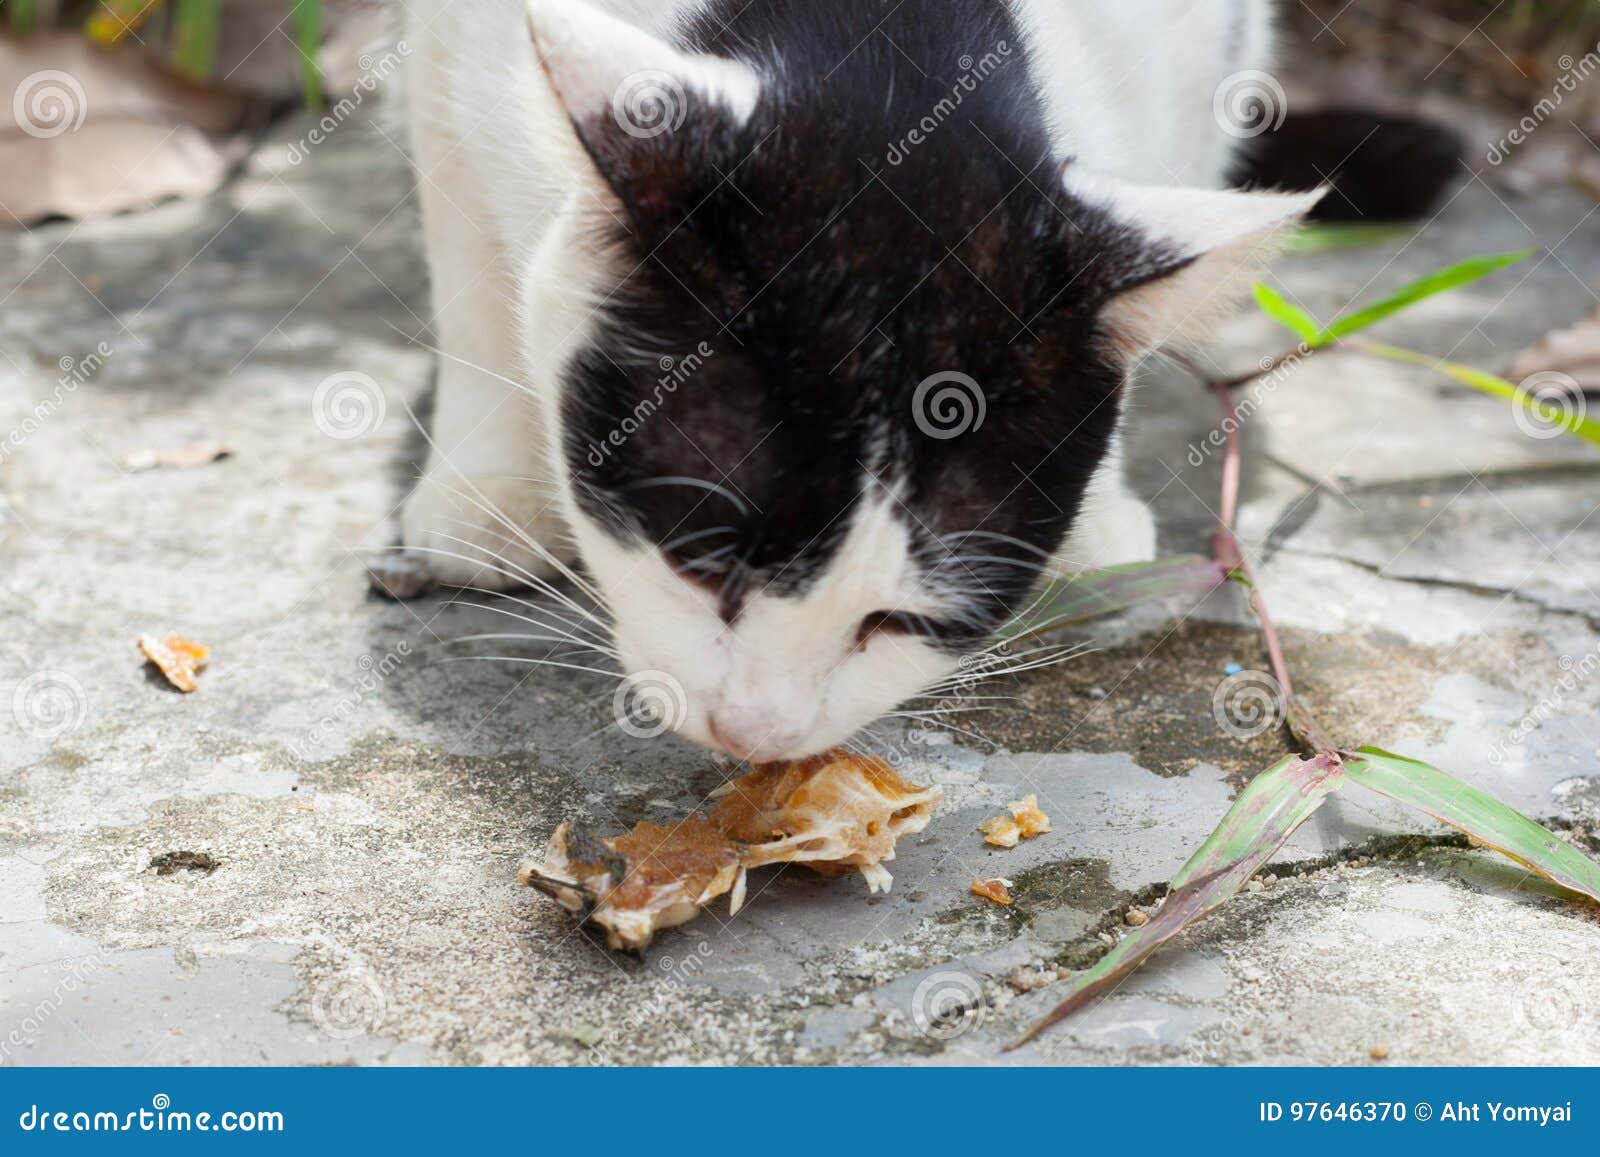 stray cats eat fish bones stray cats eat fish bones south thailand 97646370